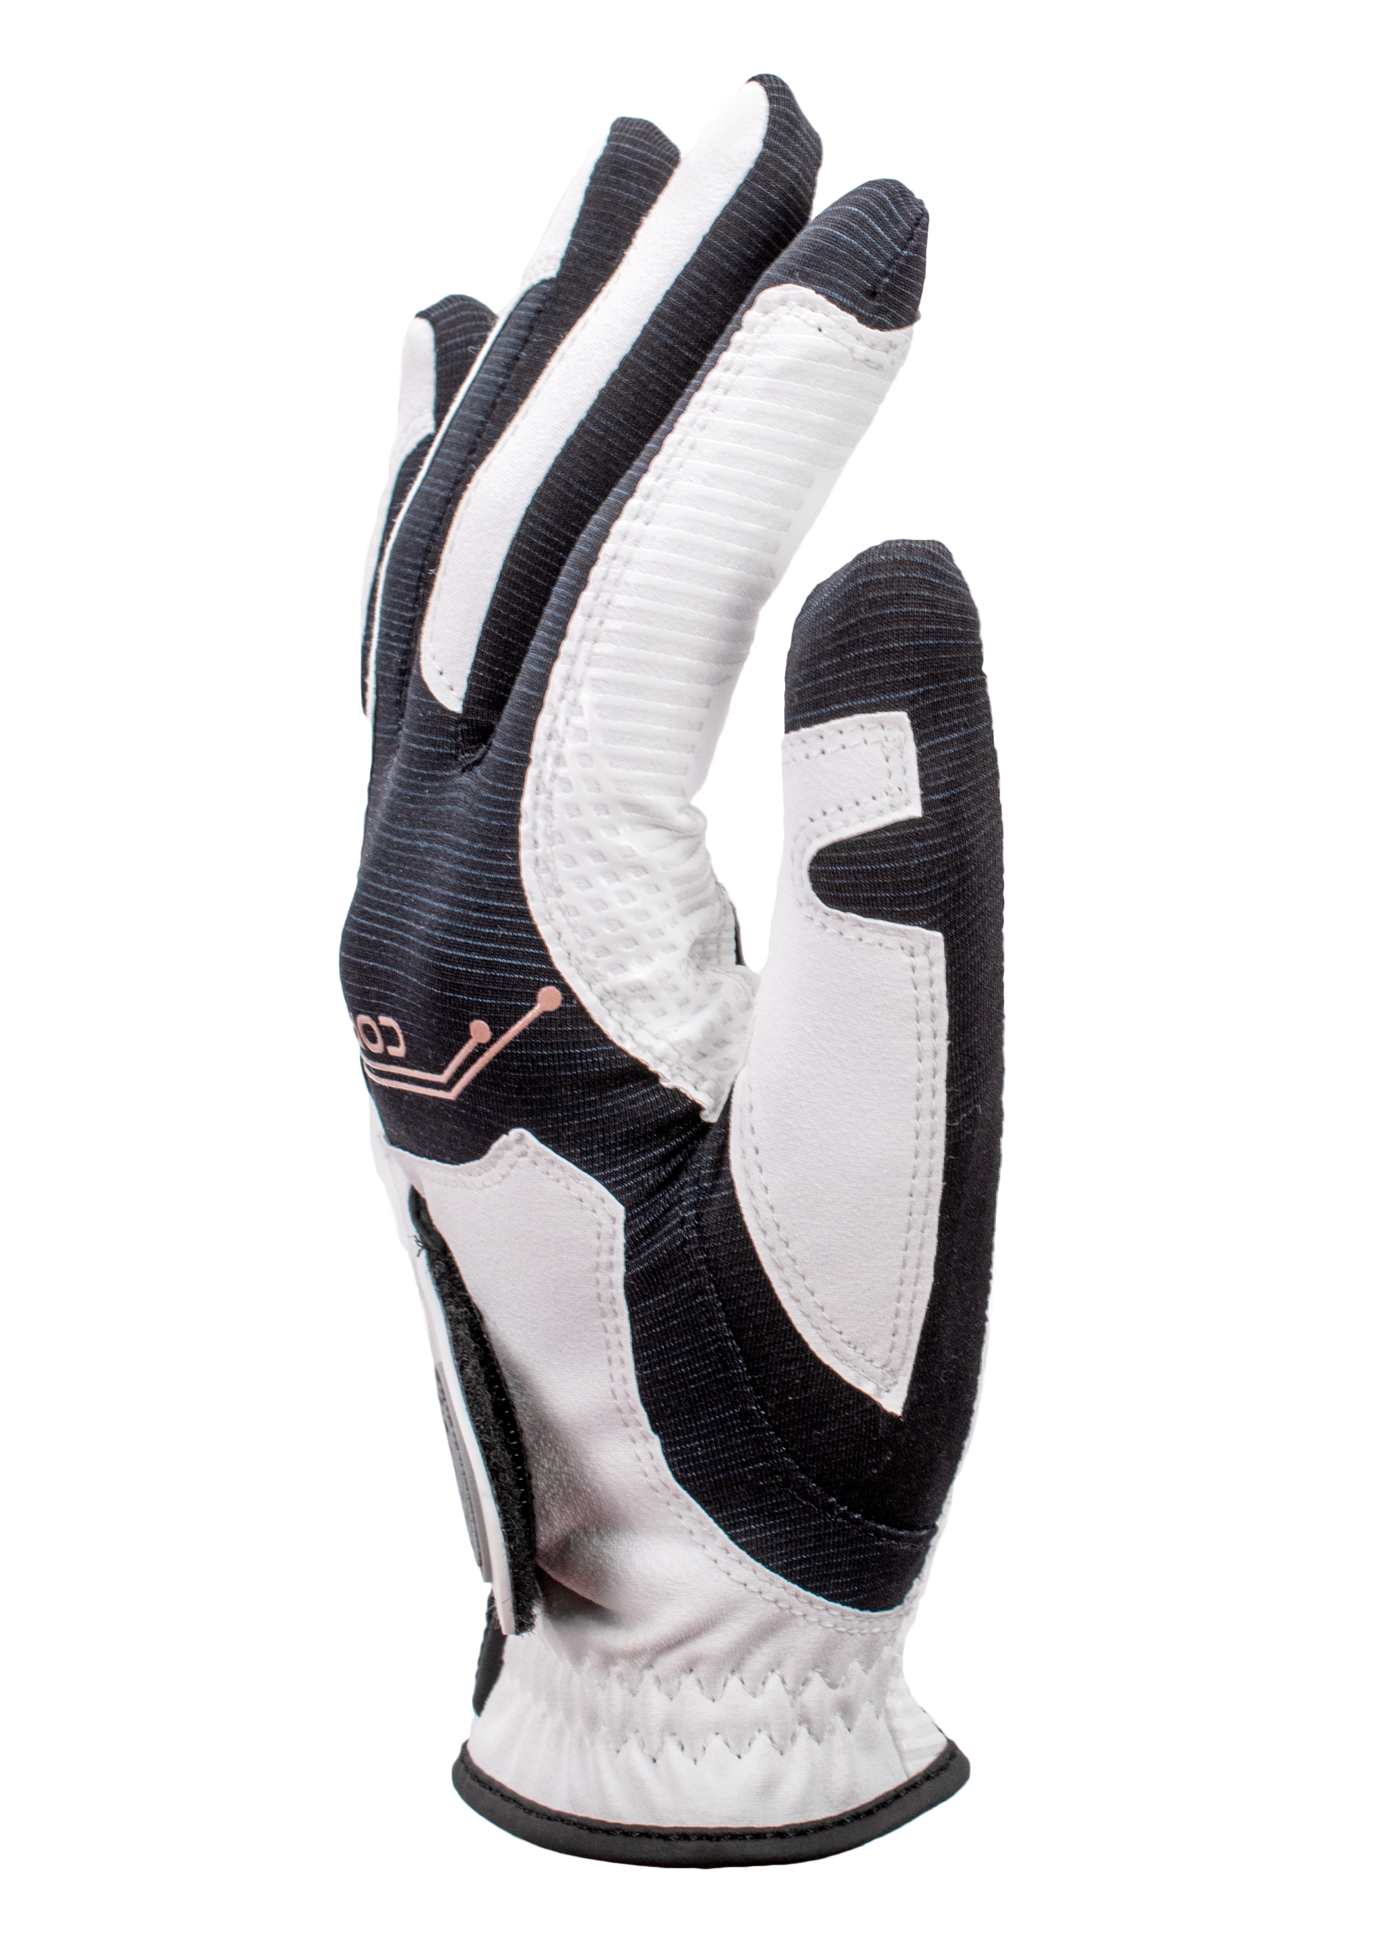 Copper Tech Golf Glove, White/Black, 3-Pack